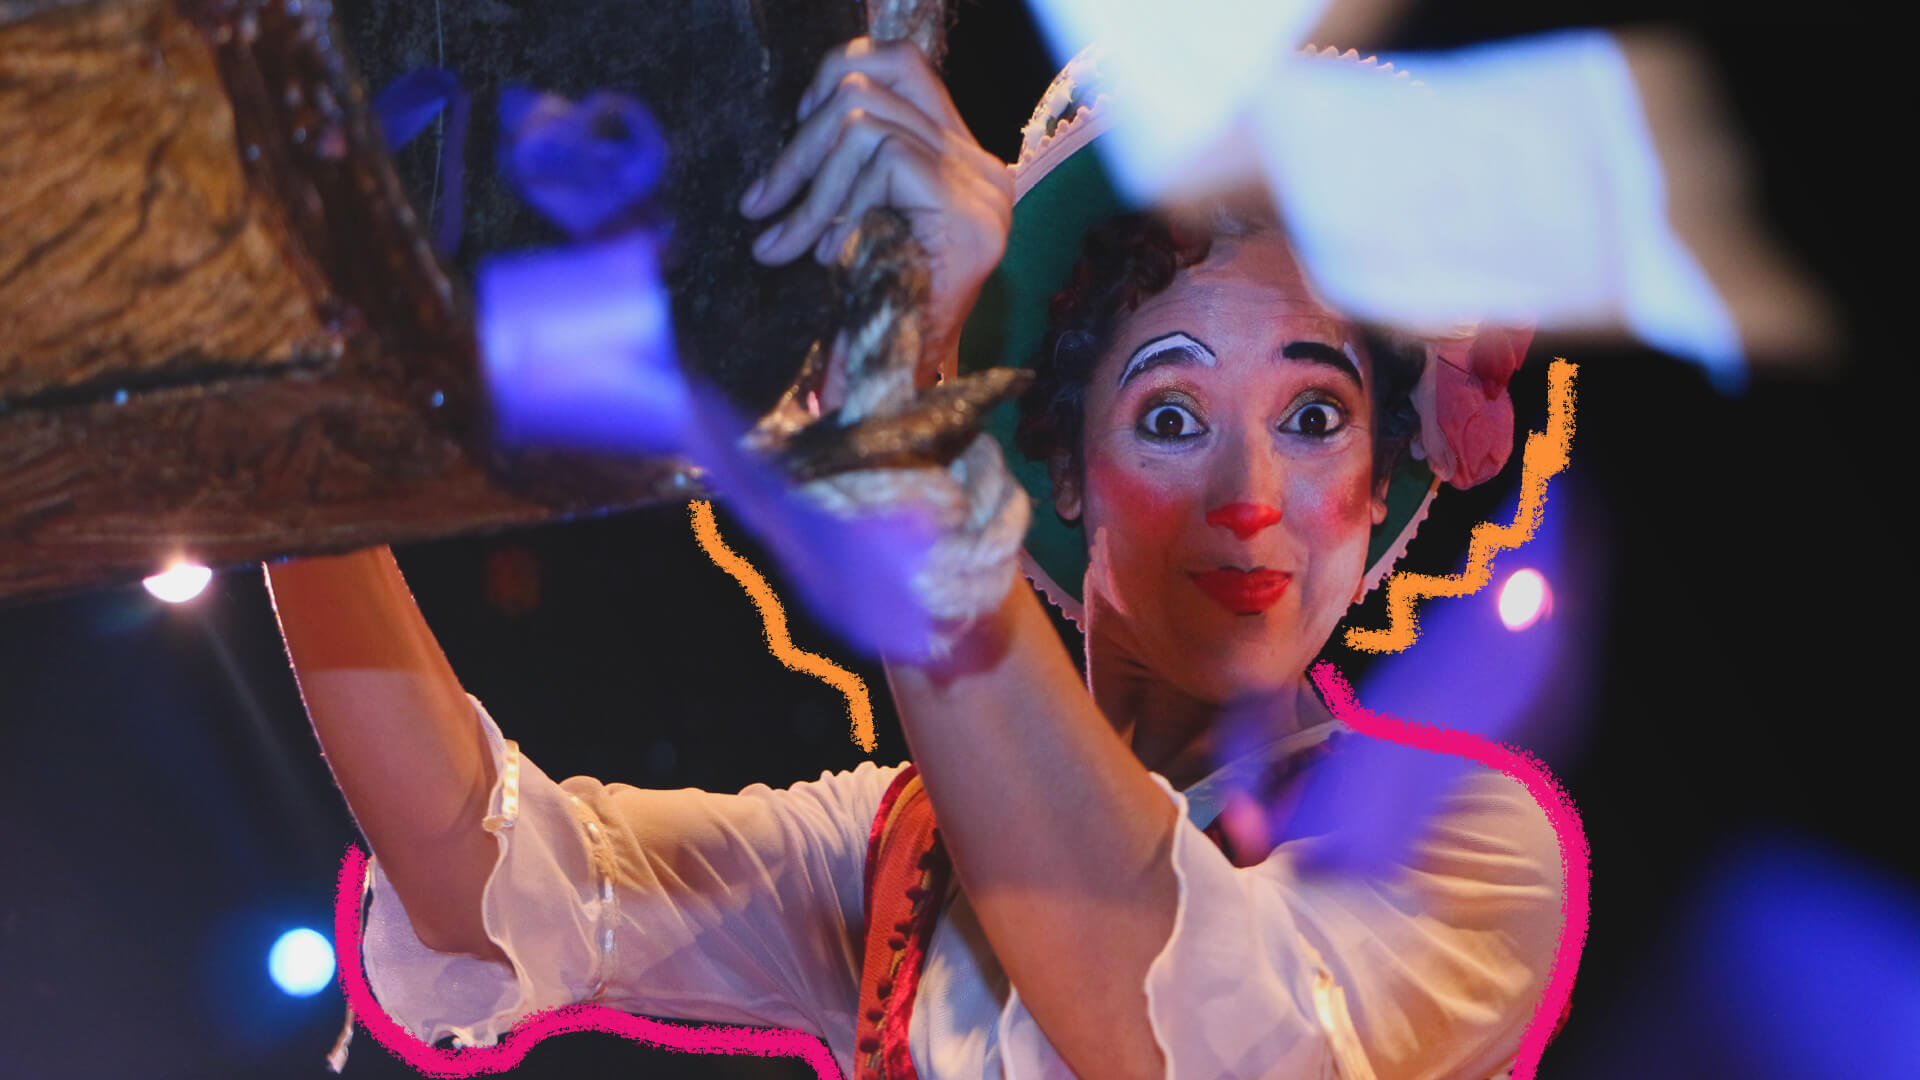 Na foto, artista circense vestida com blusa branca e adornada com pintura facial de palhaço aparece sorridente para a câmera